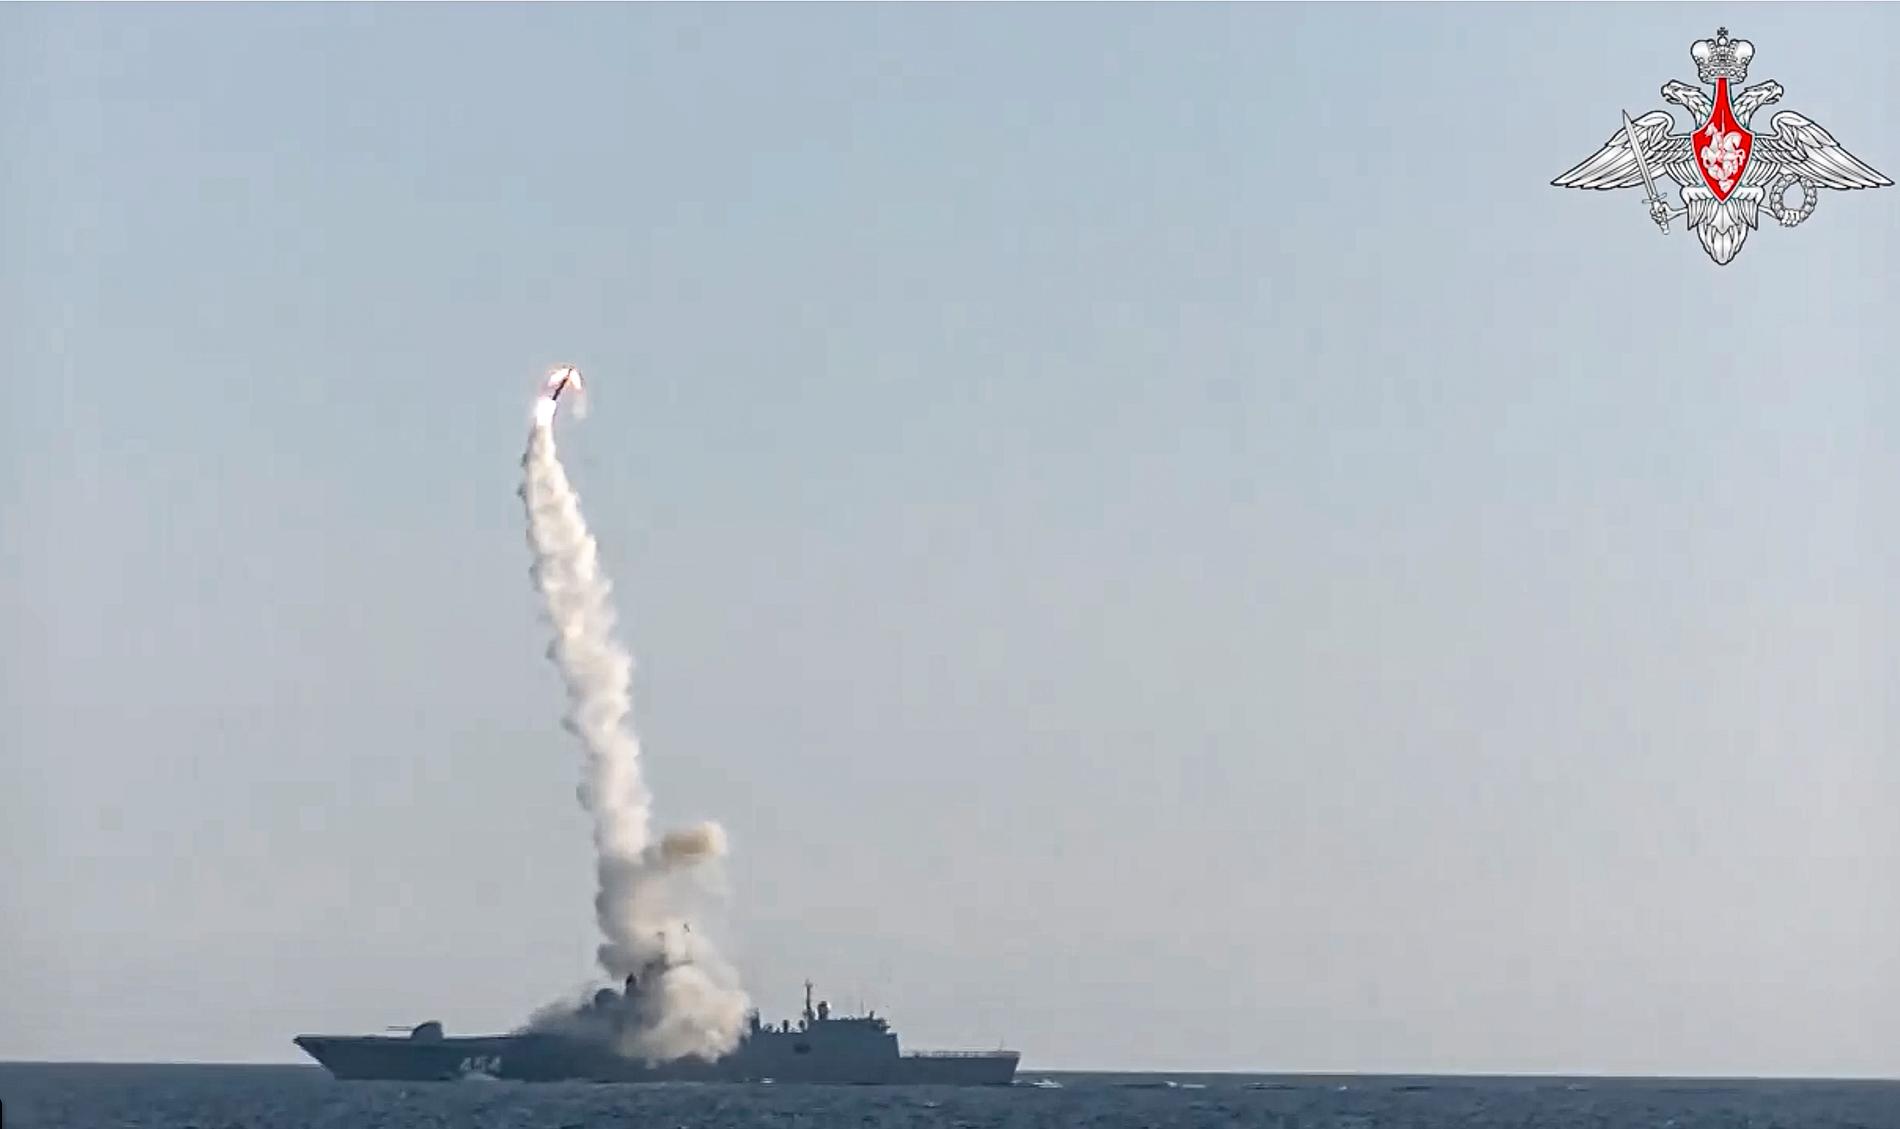 Här avfyras nya ”Zircon” hypersoniska kryssningsmissilen från ryska fregatten Amiral Gorshkov i Vita havet. Fotot släpptes av det ryska försvarsministeriet i samband med lanseringen i somras. 